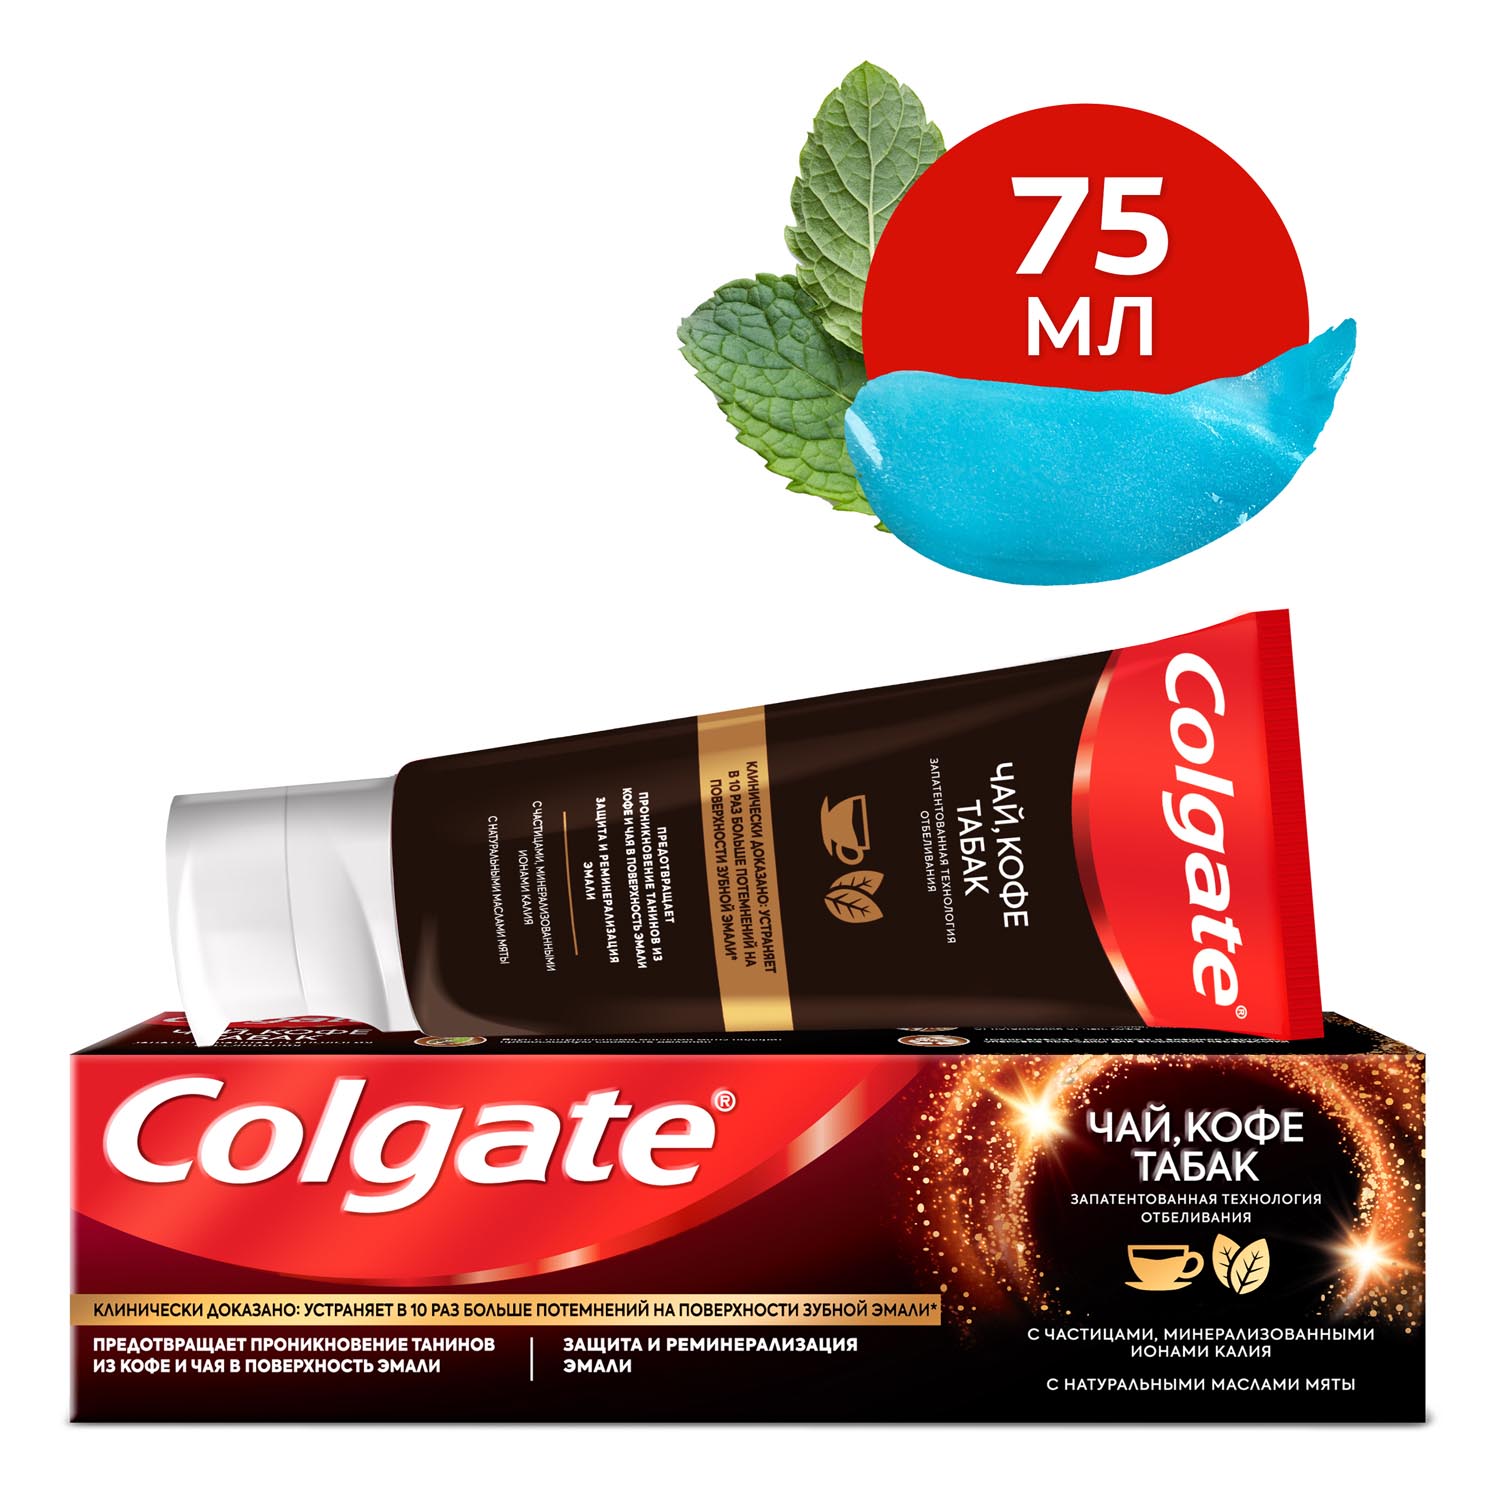 Зубная паста Colgate чай, кофе, табак отбеливающая с натуральными маслами мяты, 75 мл зубная паста colgate бережное отбеливание 100 мл